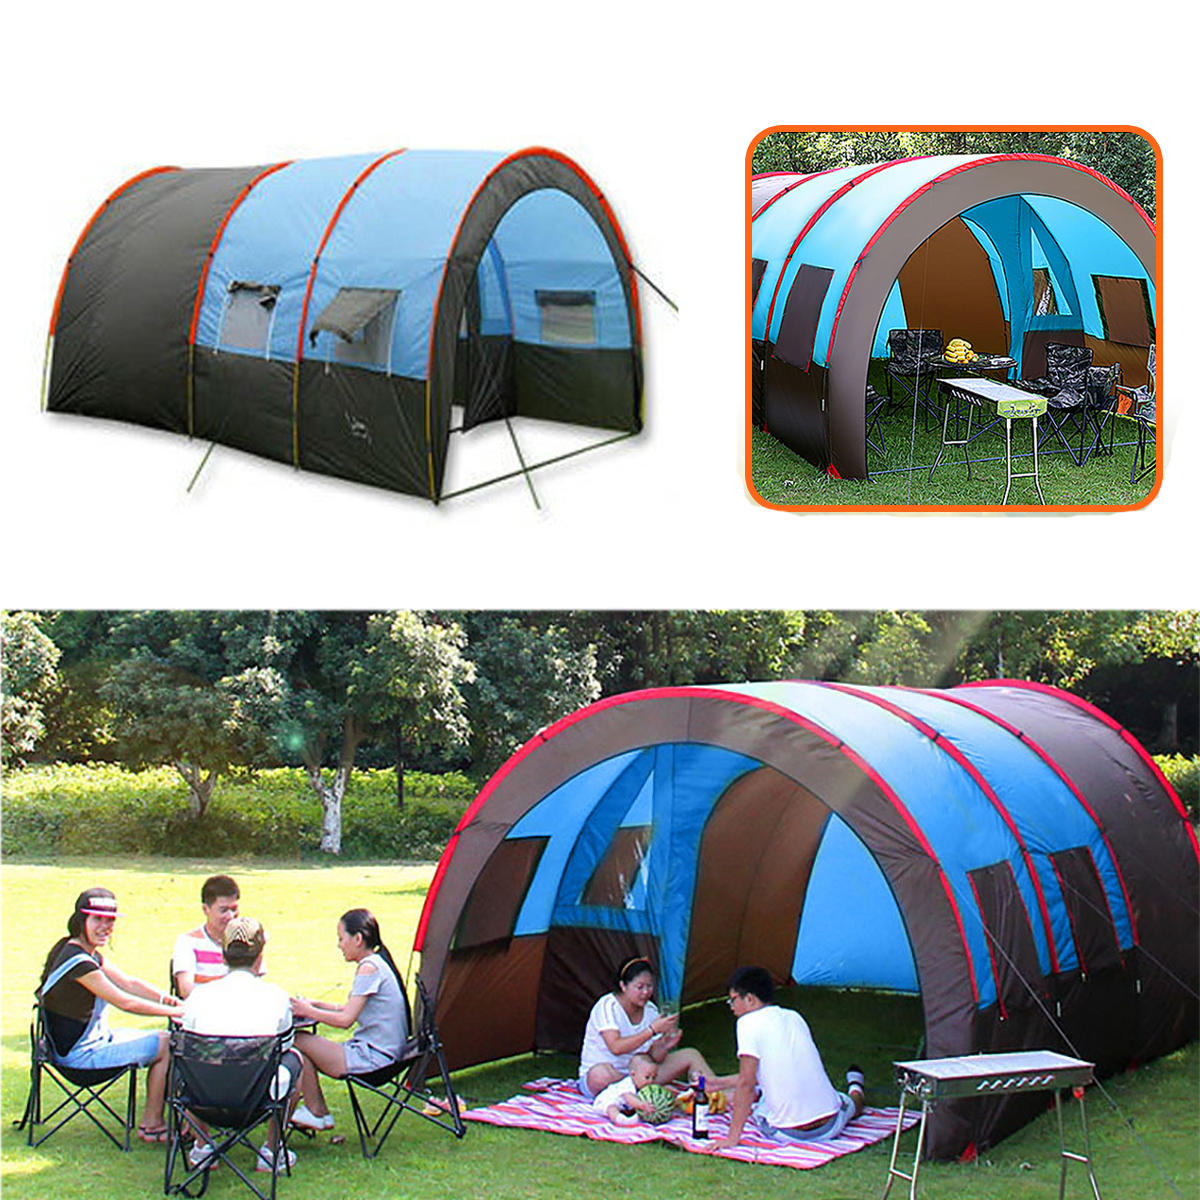 Barraca de acampamento ao ar livre para 8-10 pessoas, impermeável de dupla camada, grande tenda familiar com toldo para proteção contra o sol.